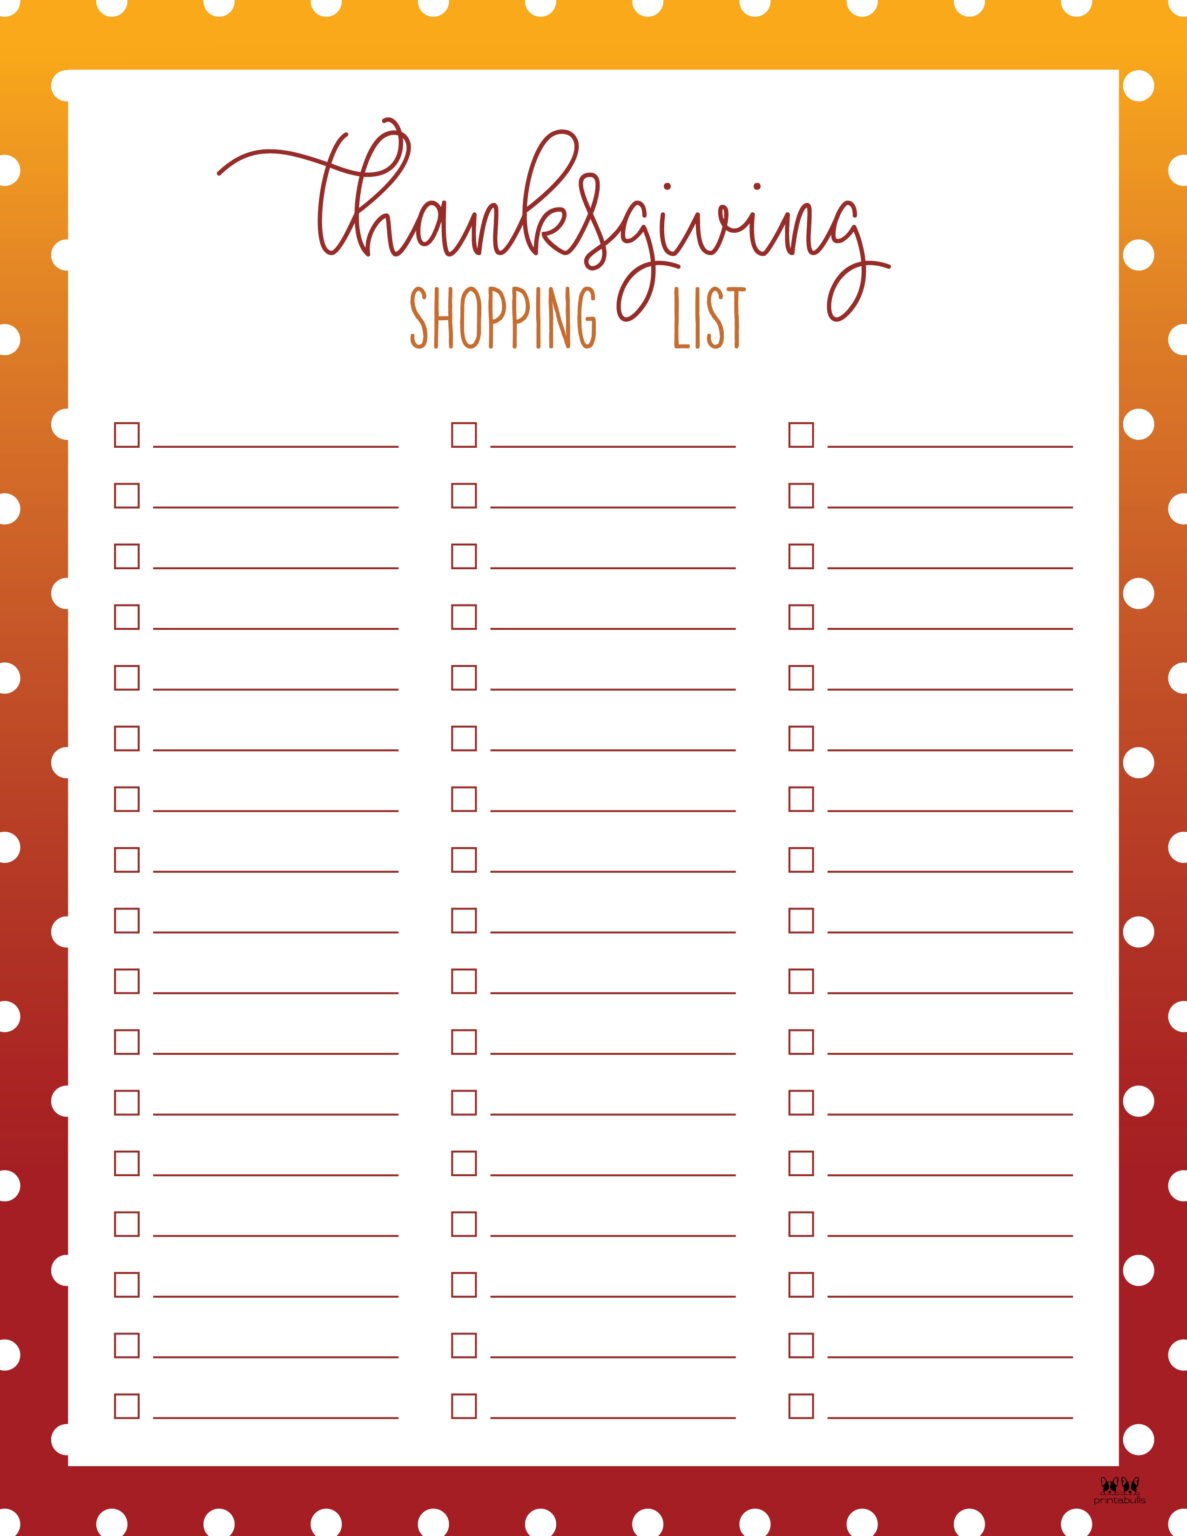 Thanksgiving Shopping Lists & Checklists - 30 FREE Printables - PrintaBulk